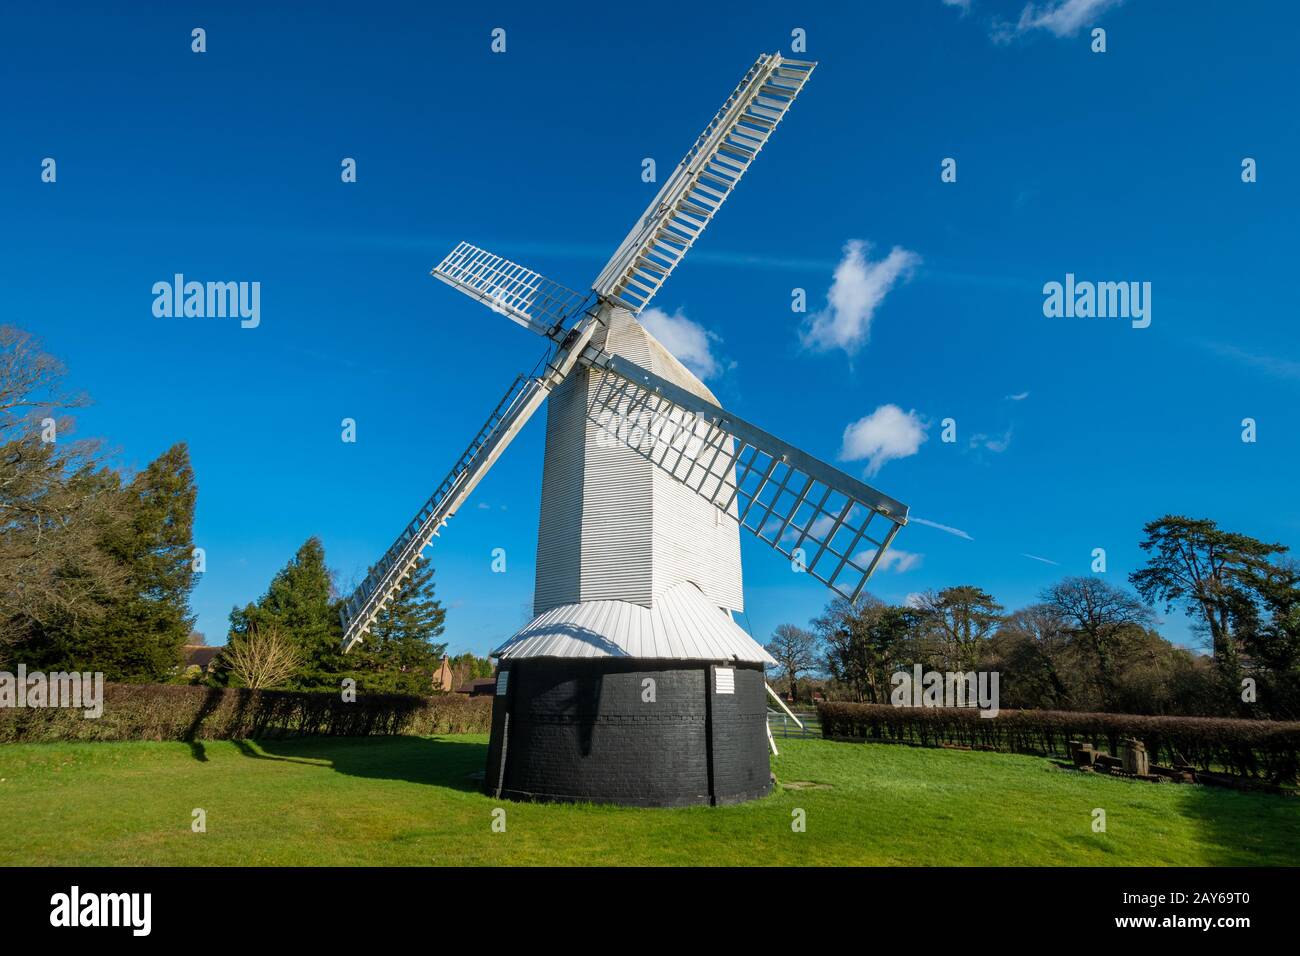 Lowfield Heath Windmill, eine in der Klasse II aufgeführte Postmühle in Charlwood, Surrey, England, die wieder in Ordnung gebracht wurde. Besucherattraktion, Großbritannien Stockfoto